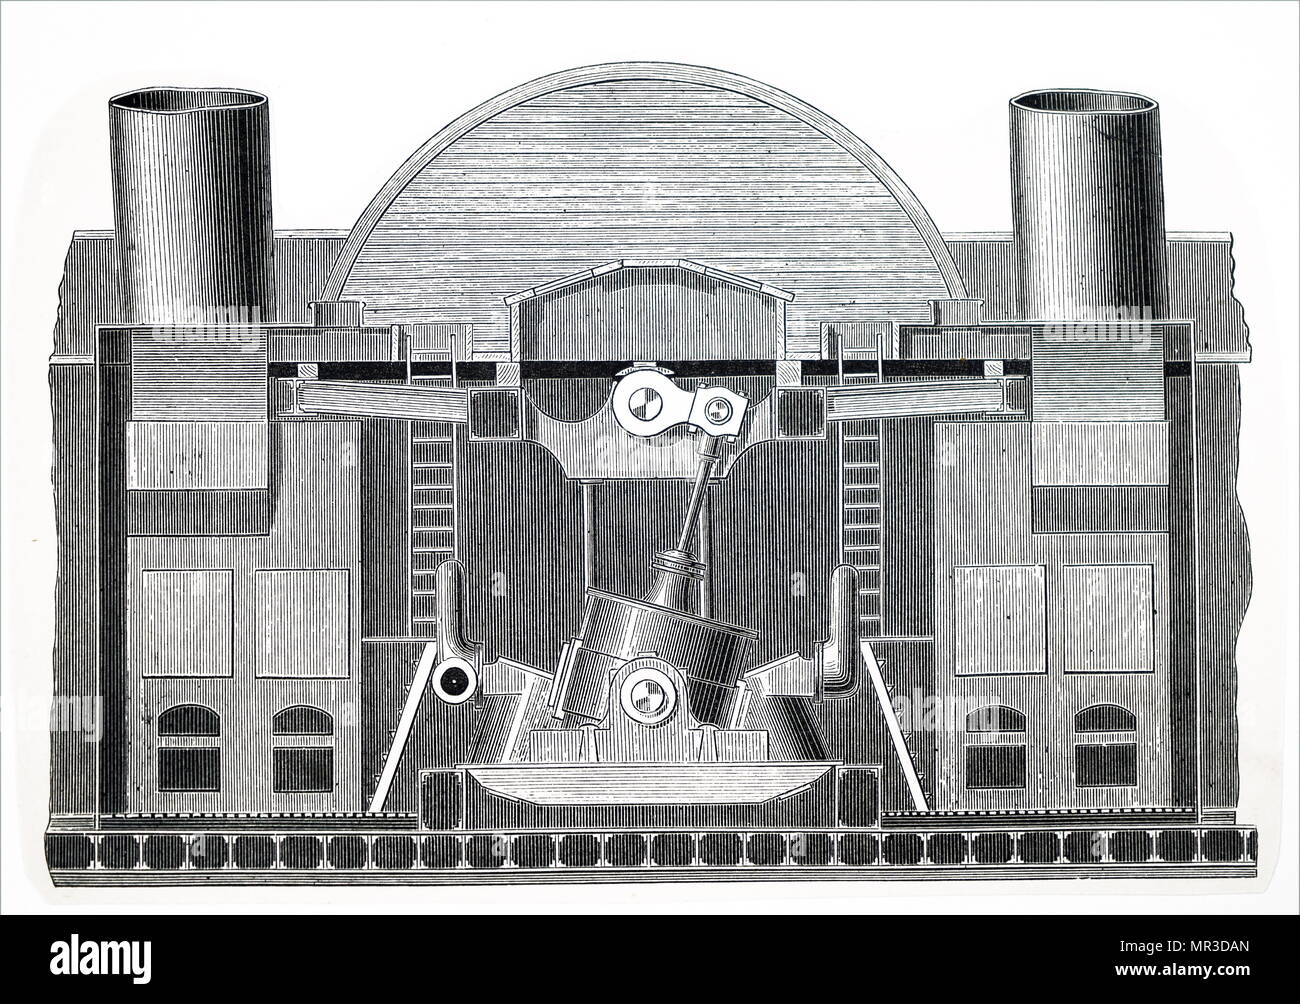 Illustrazione raffigurante una turbina a vapore, un dispositivo che estrae energia termica dal vapore in pressione e lo utilizza per fare lavoro meccanico su un albero rotante di uscita. Inventato da Charles Algernon Parsons (1854-1931) un ingegnere anglo-irlandese e inventore del composto turbina a vapore. Datata del XIX secolo Foto Stock